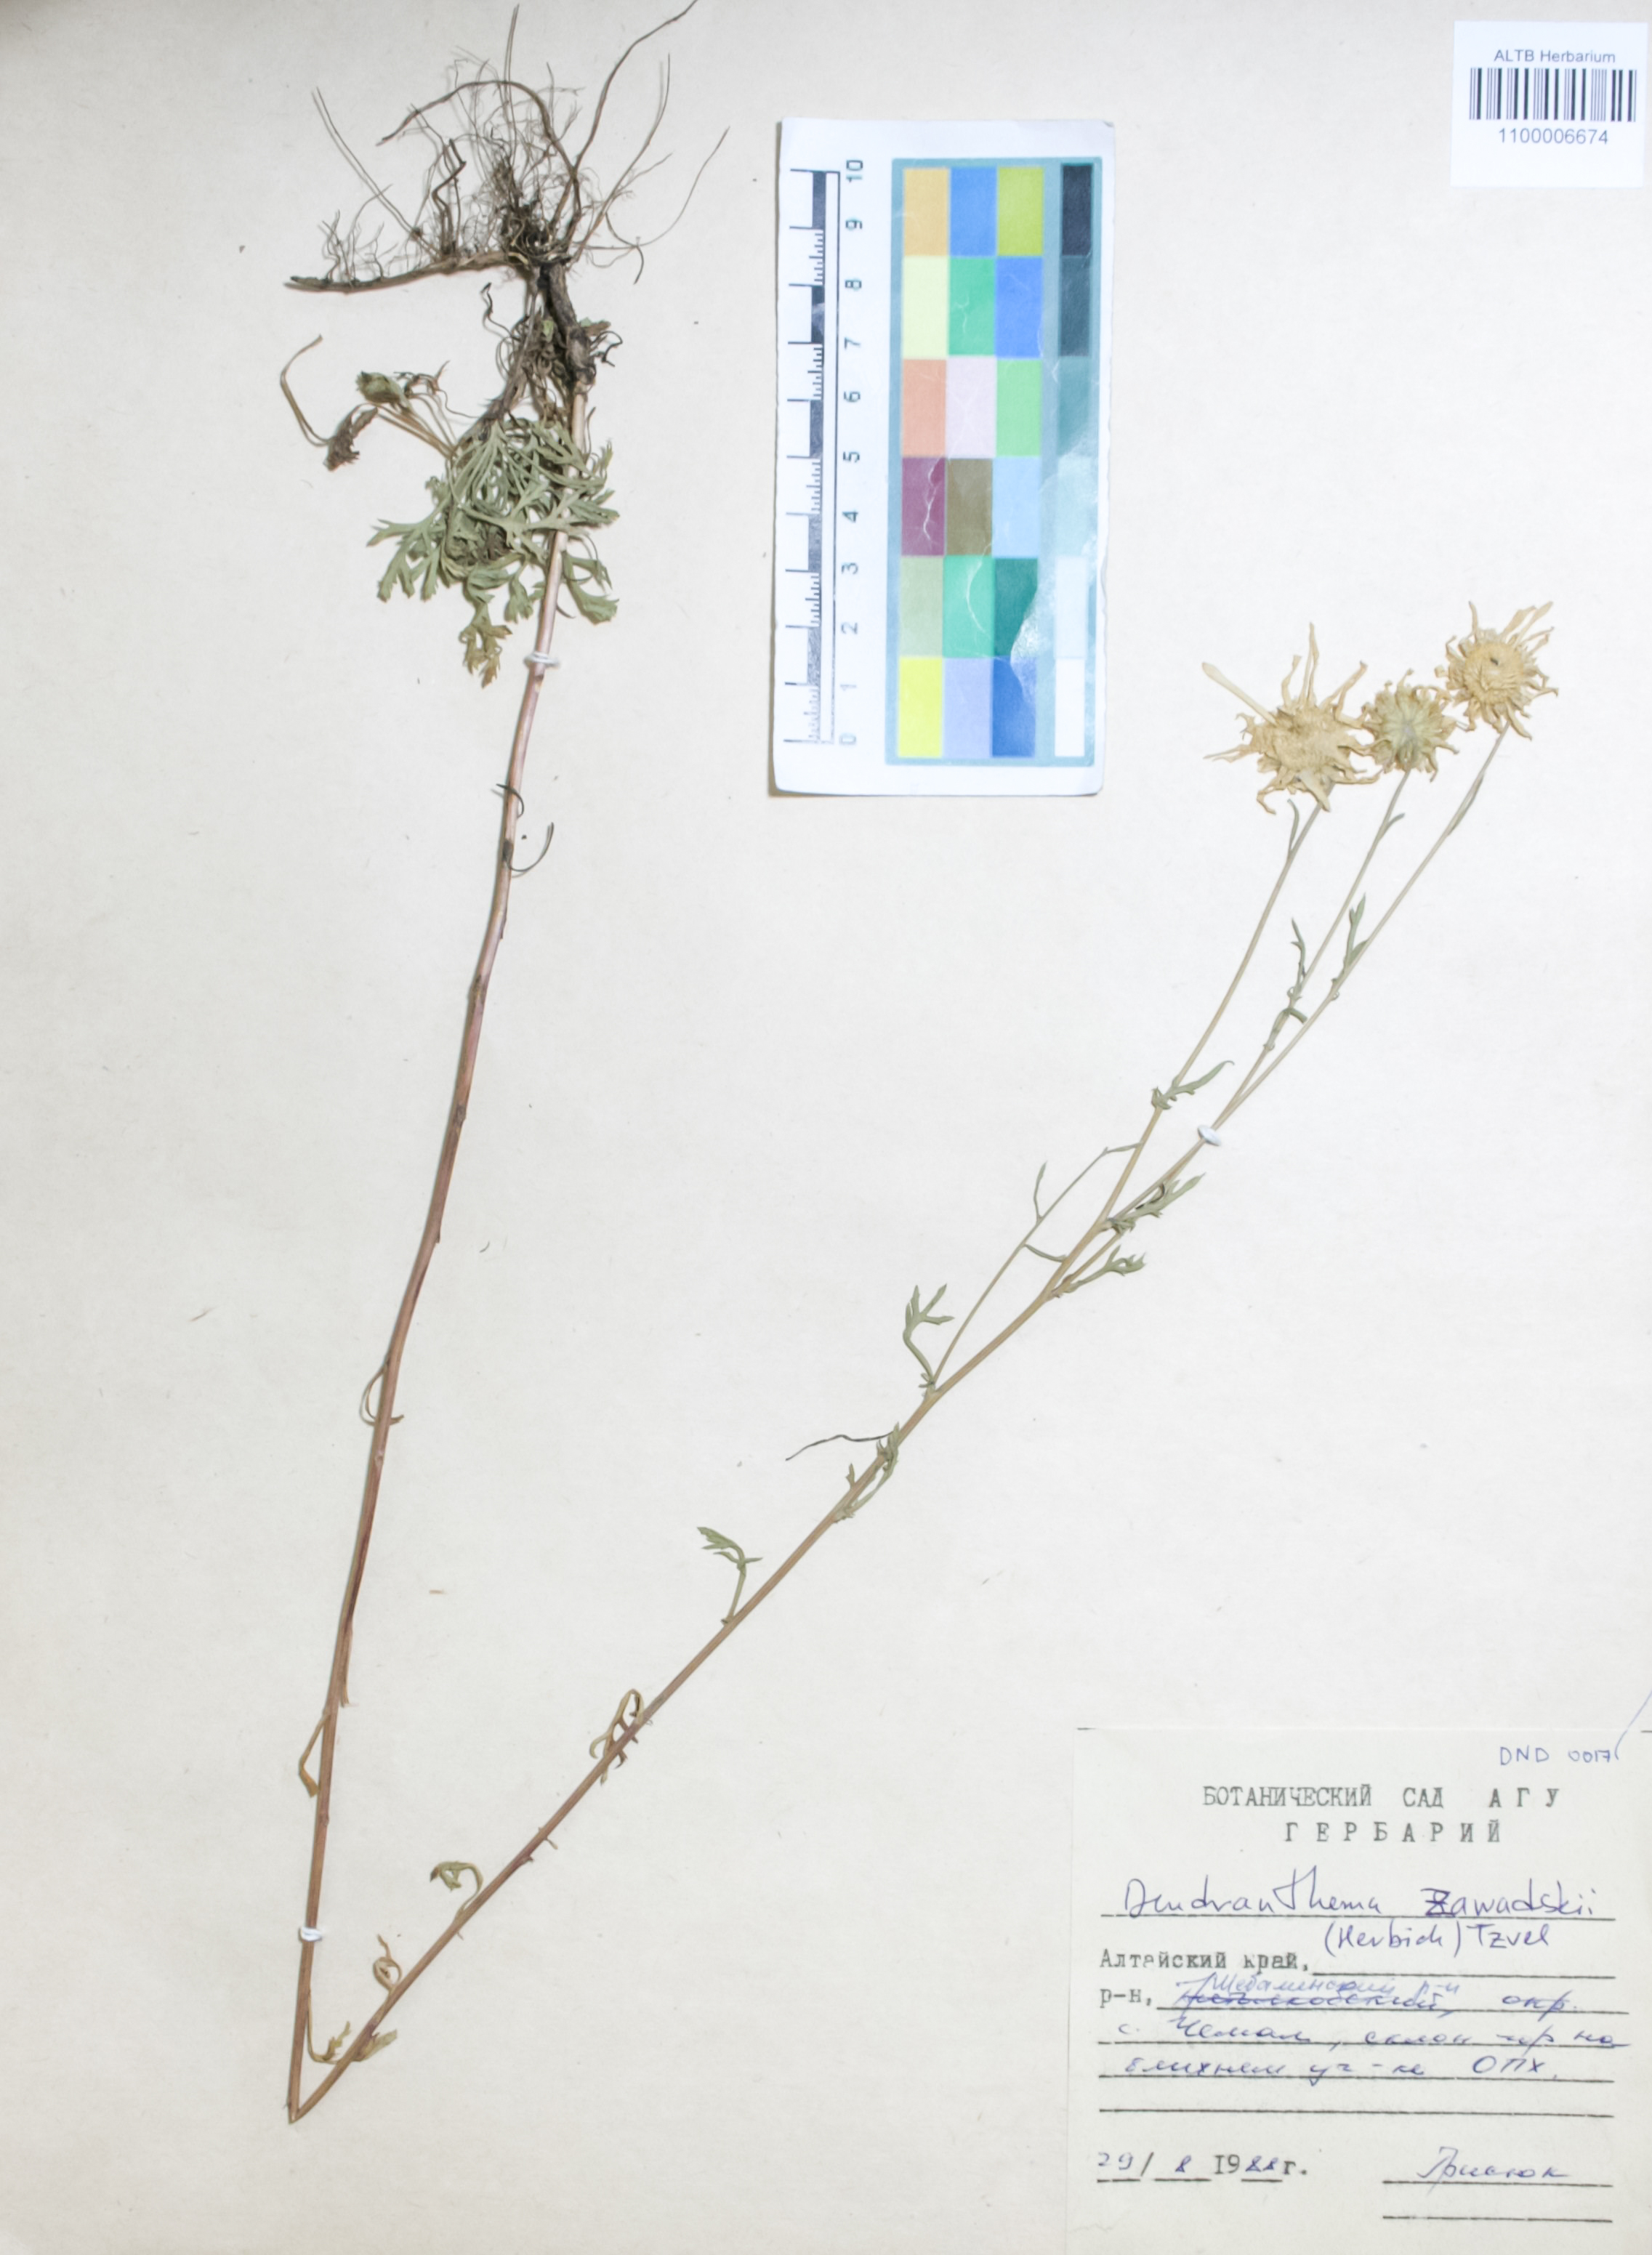 Asteraceae,Dendranthema zawadskii (Herbich.) Tzvelev.